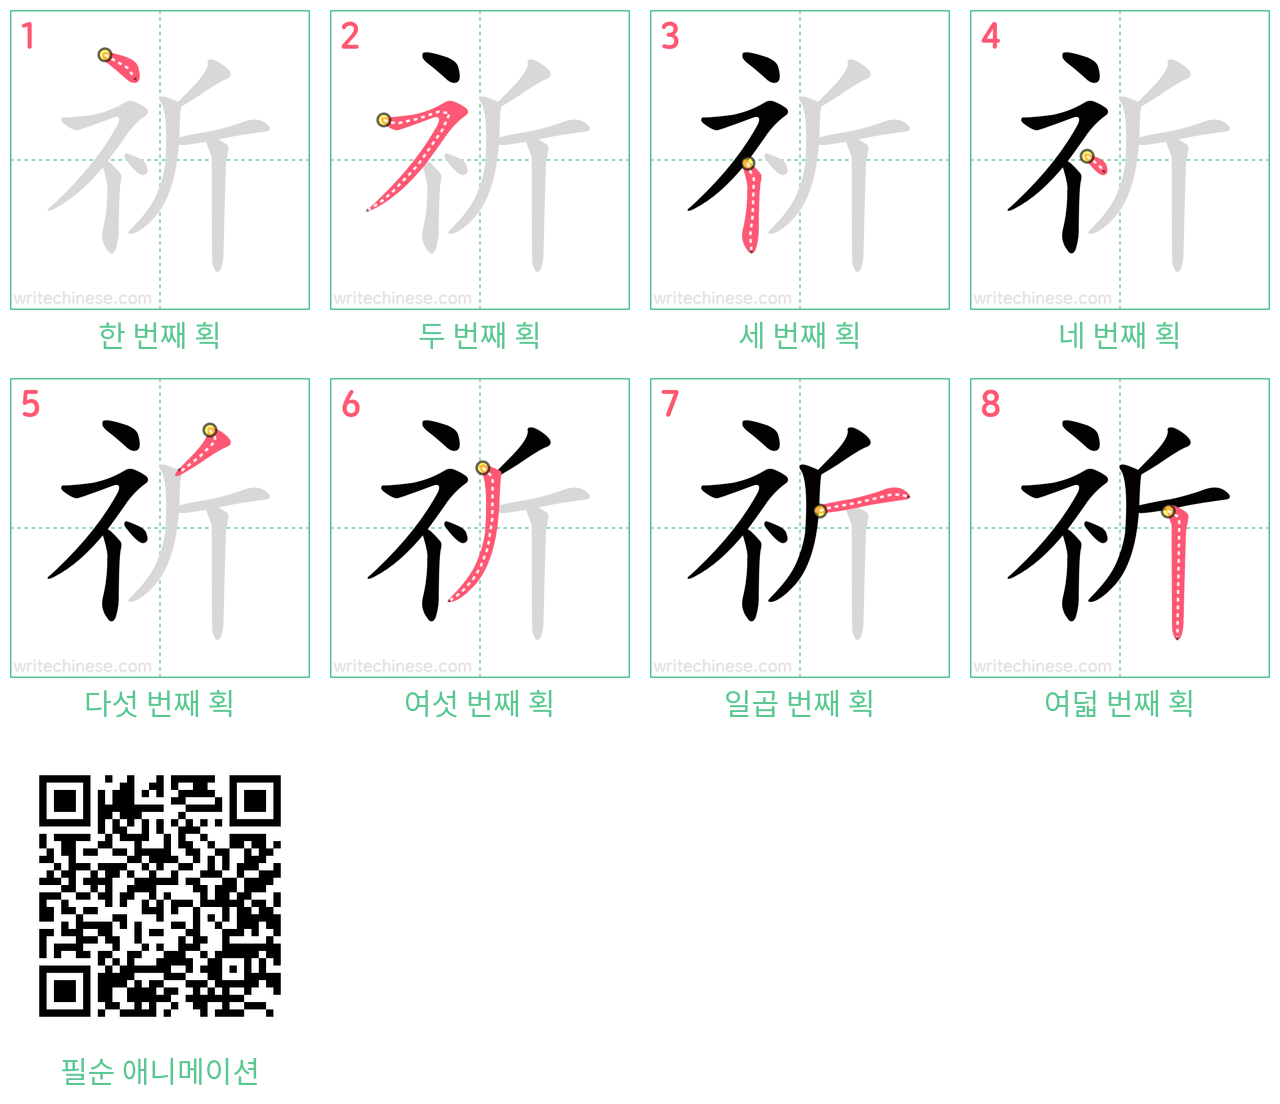 祈 step-by-step stroke order diagrams